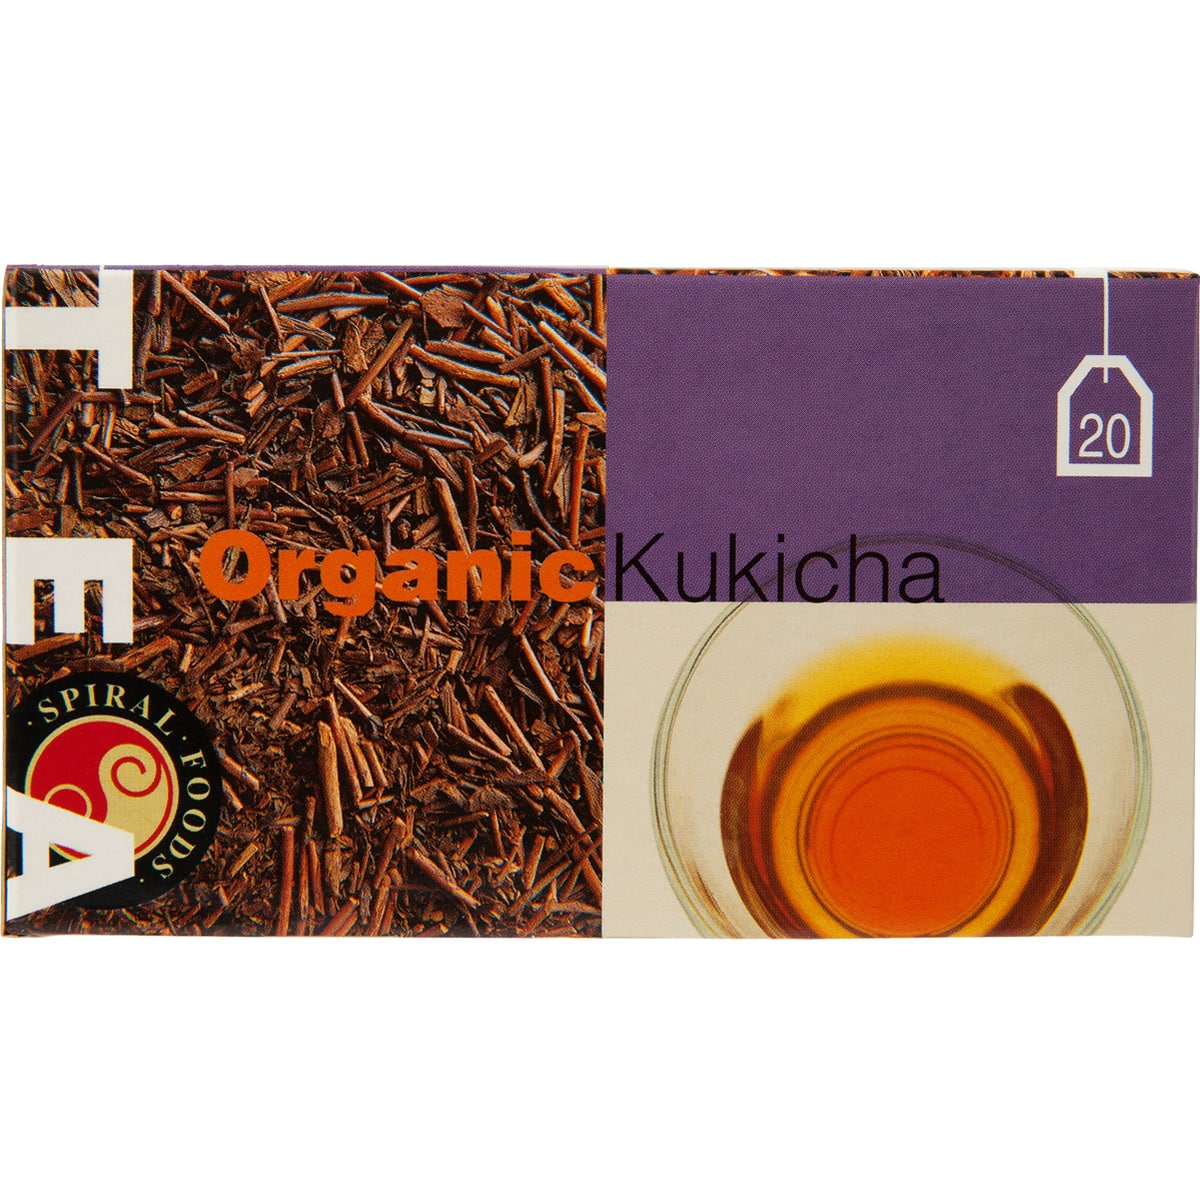 Spiral Organic Kukicha Tea bags 20 Tea Bags